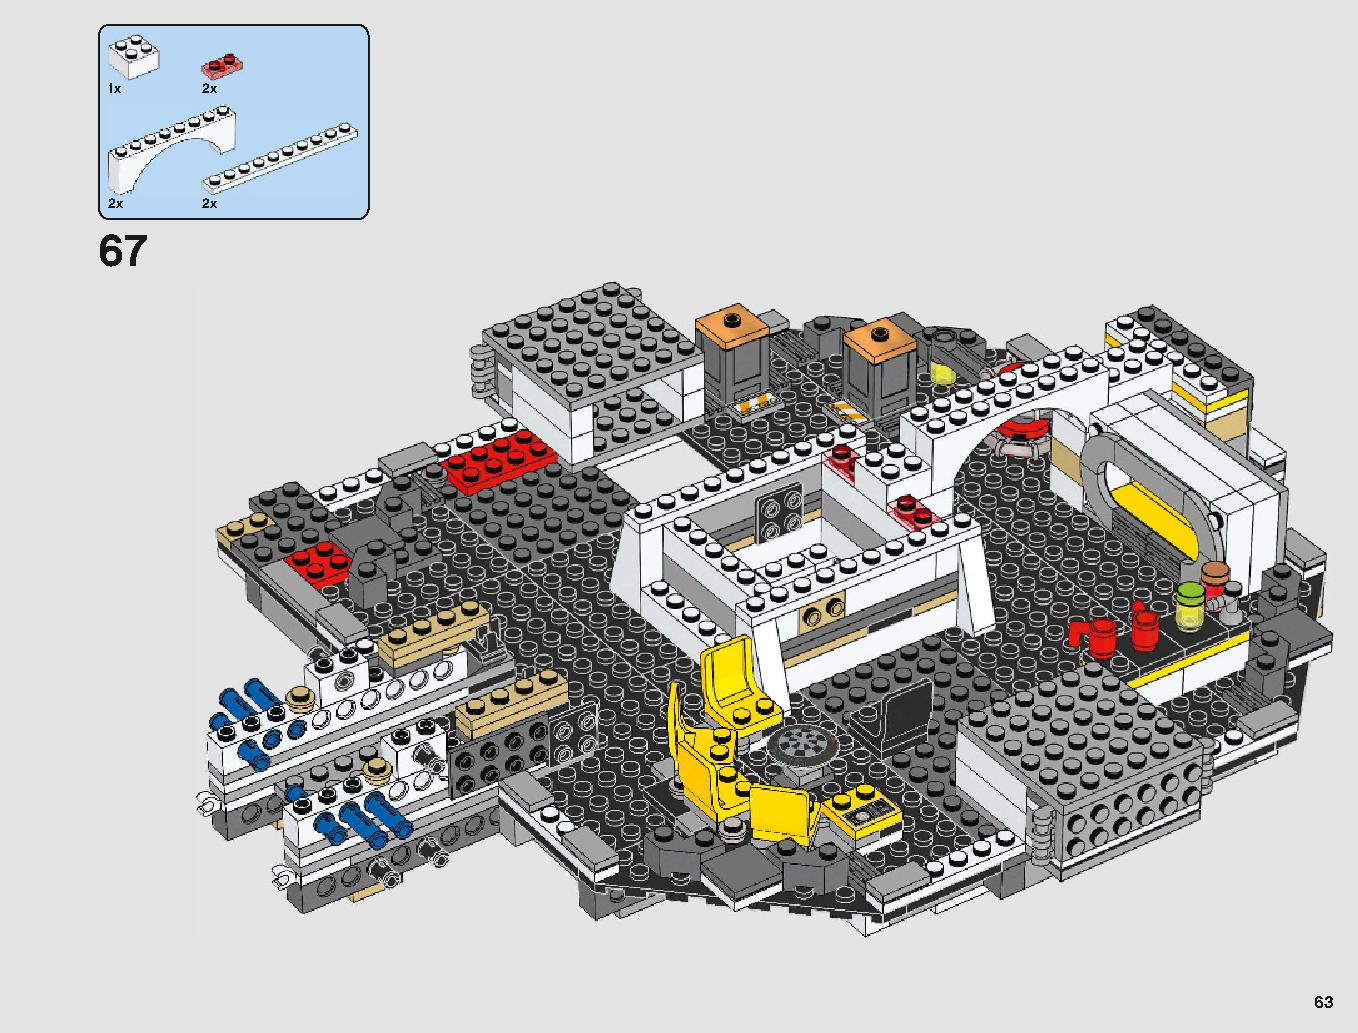 ミレニアム・ファルコン 75212 レゴの商品情報 レゴの説明書・組立方法 63 page